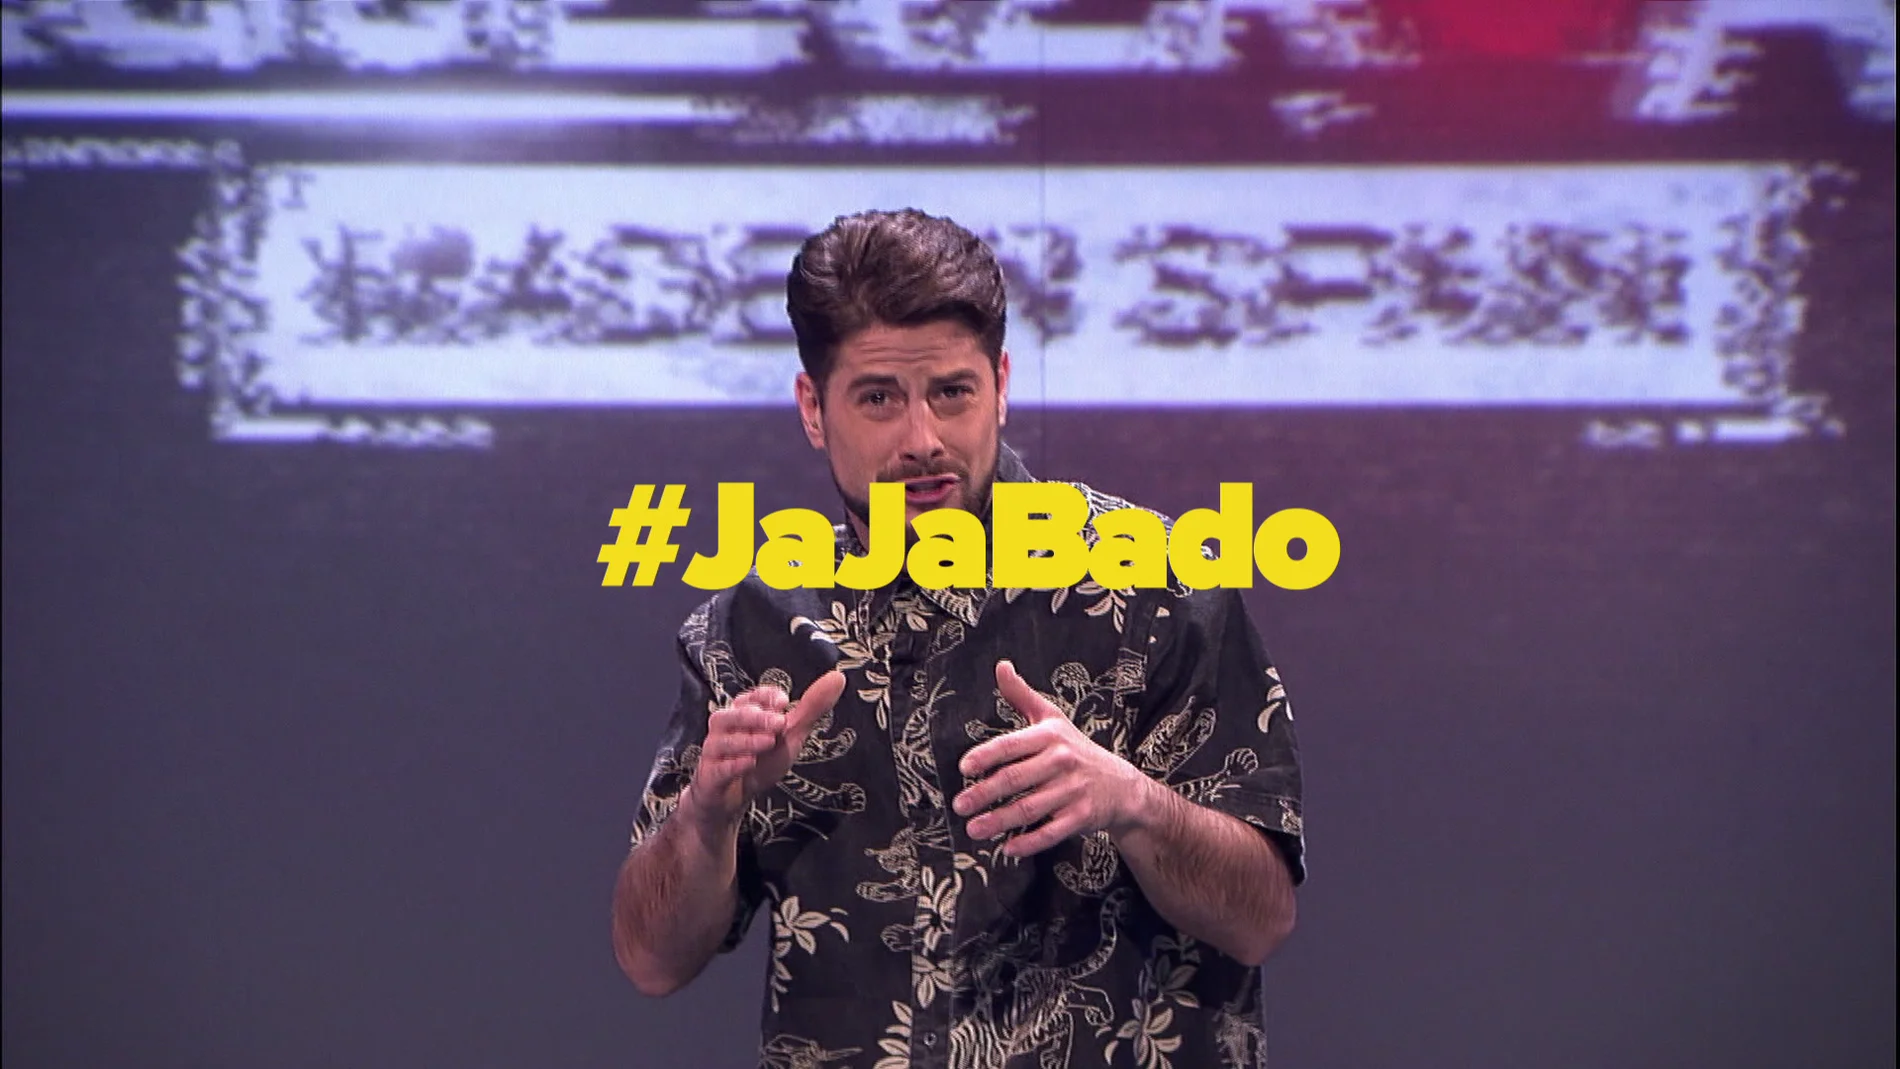 JaJá-Bado